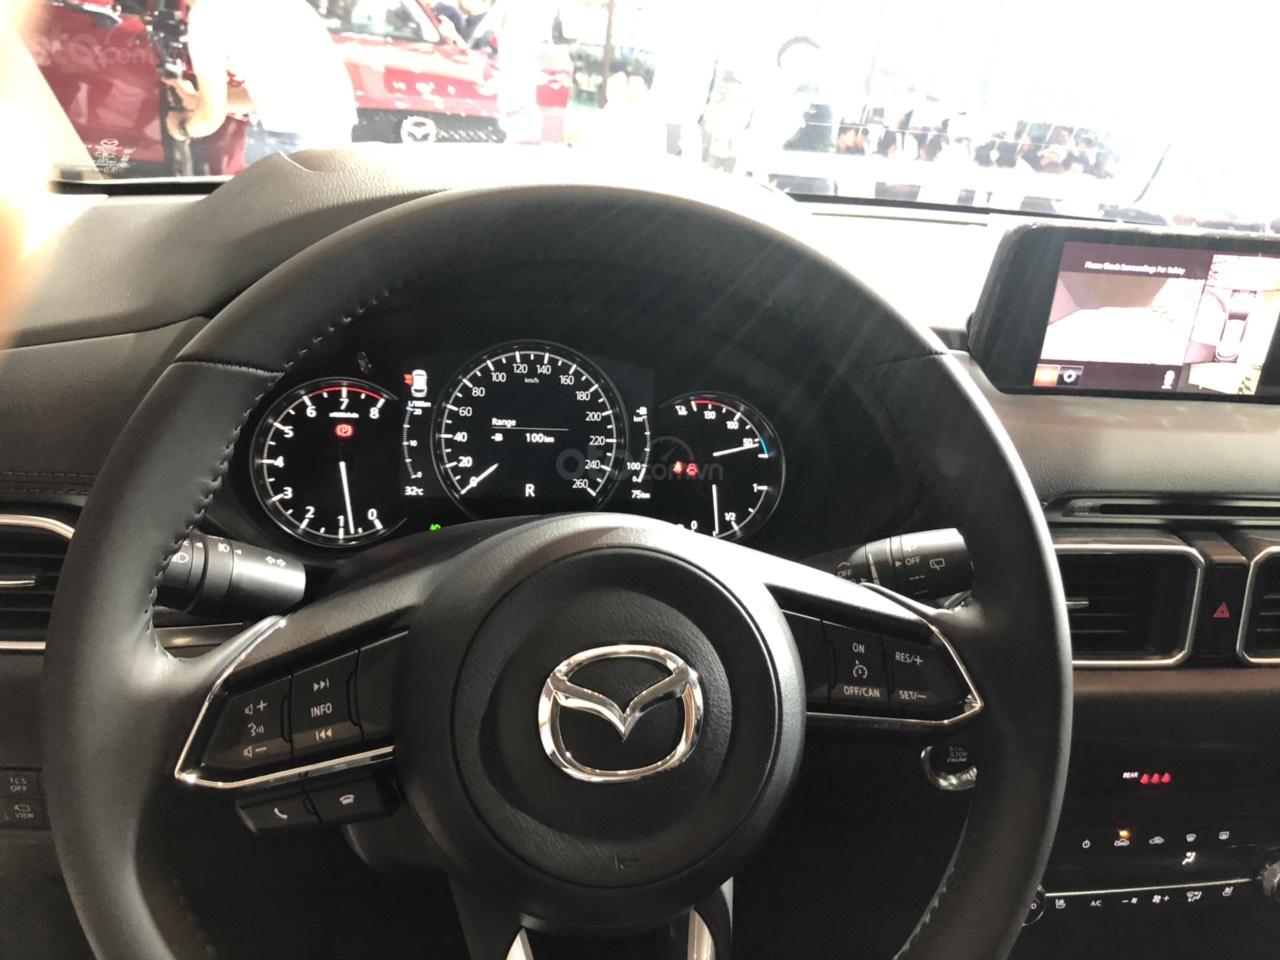 So sanh xe Mazda CX-5 2019 va Honda CR-V 2019 Cong nghe dau thuc dung